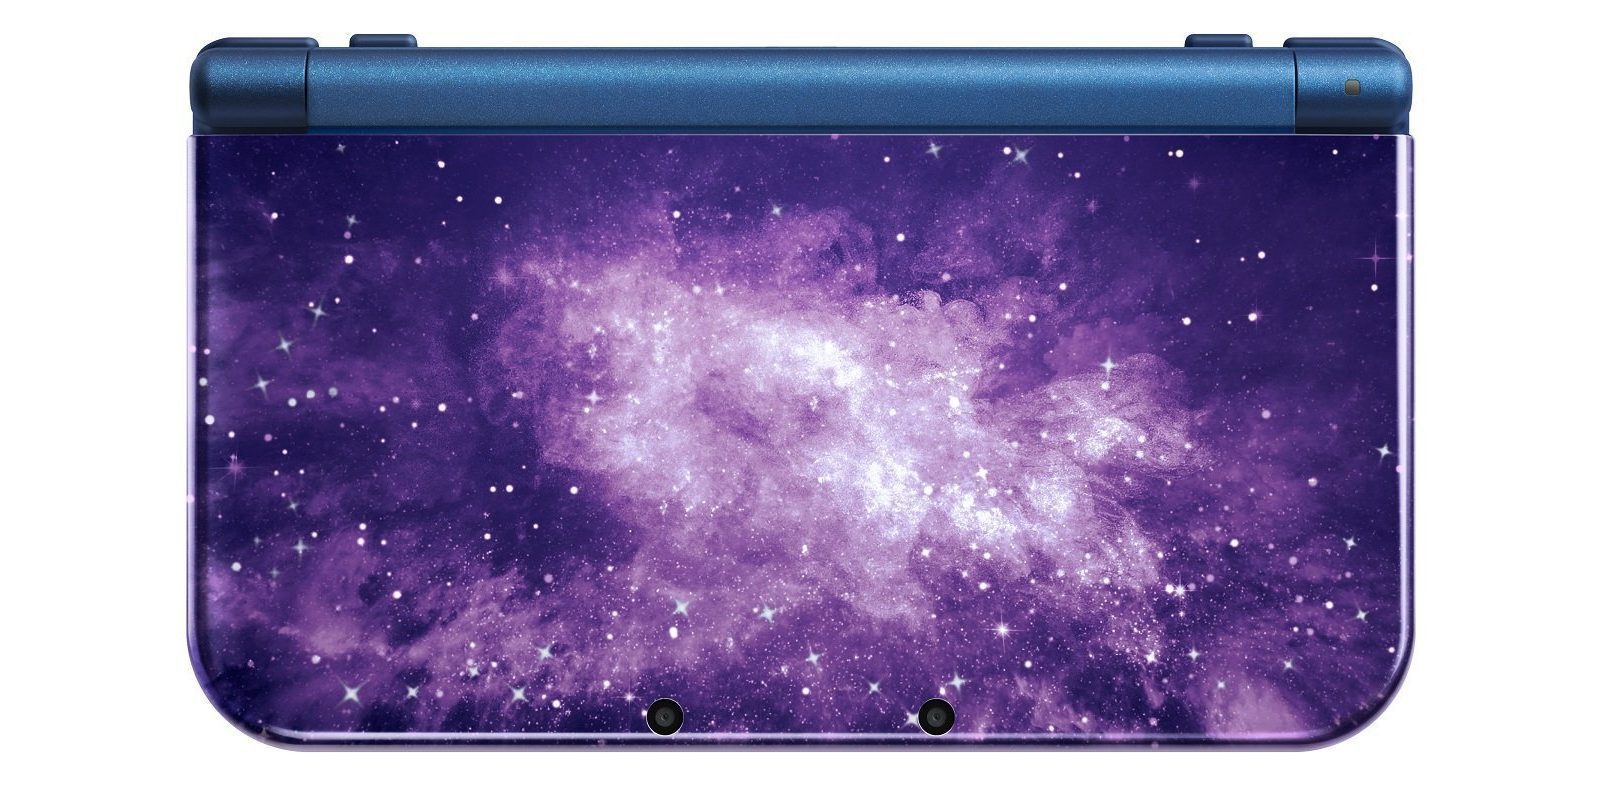 New Nintendo 3DS XL recibe un modelo con temática espacial